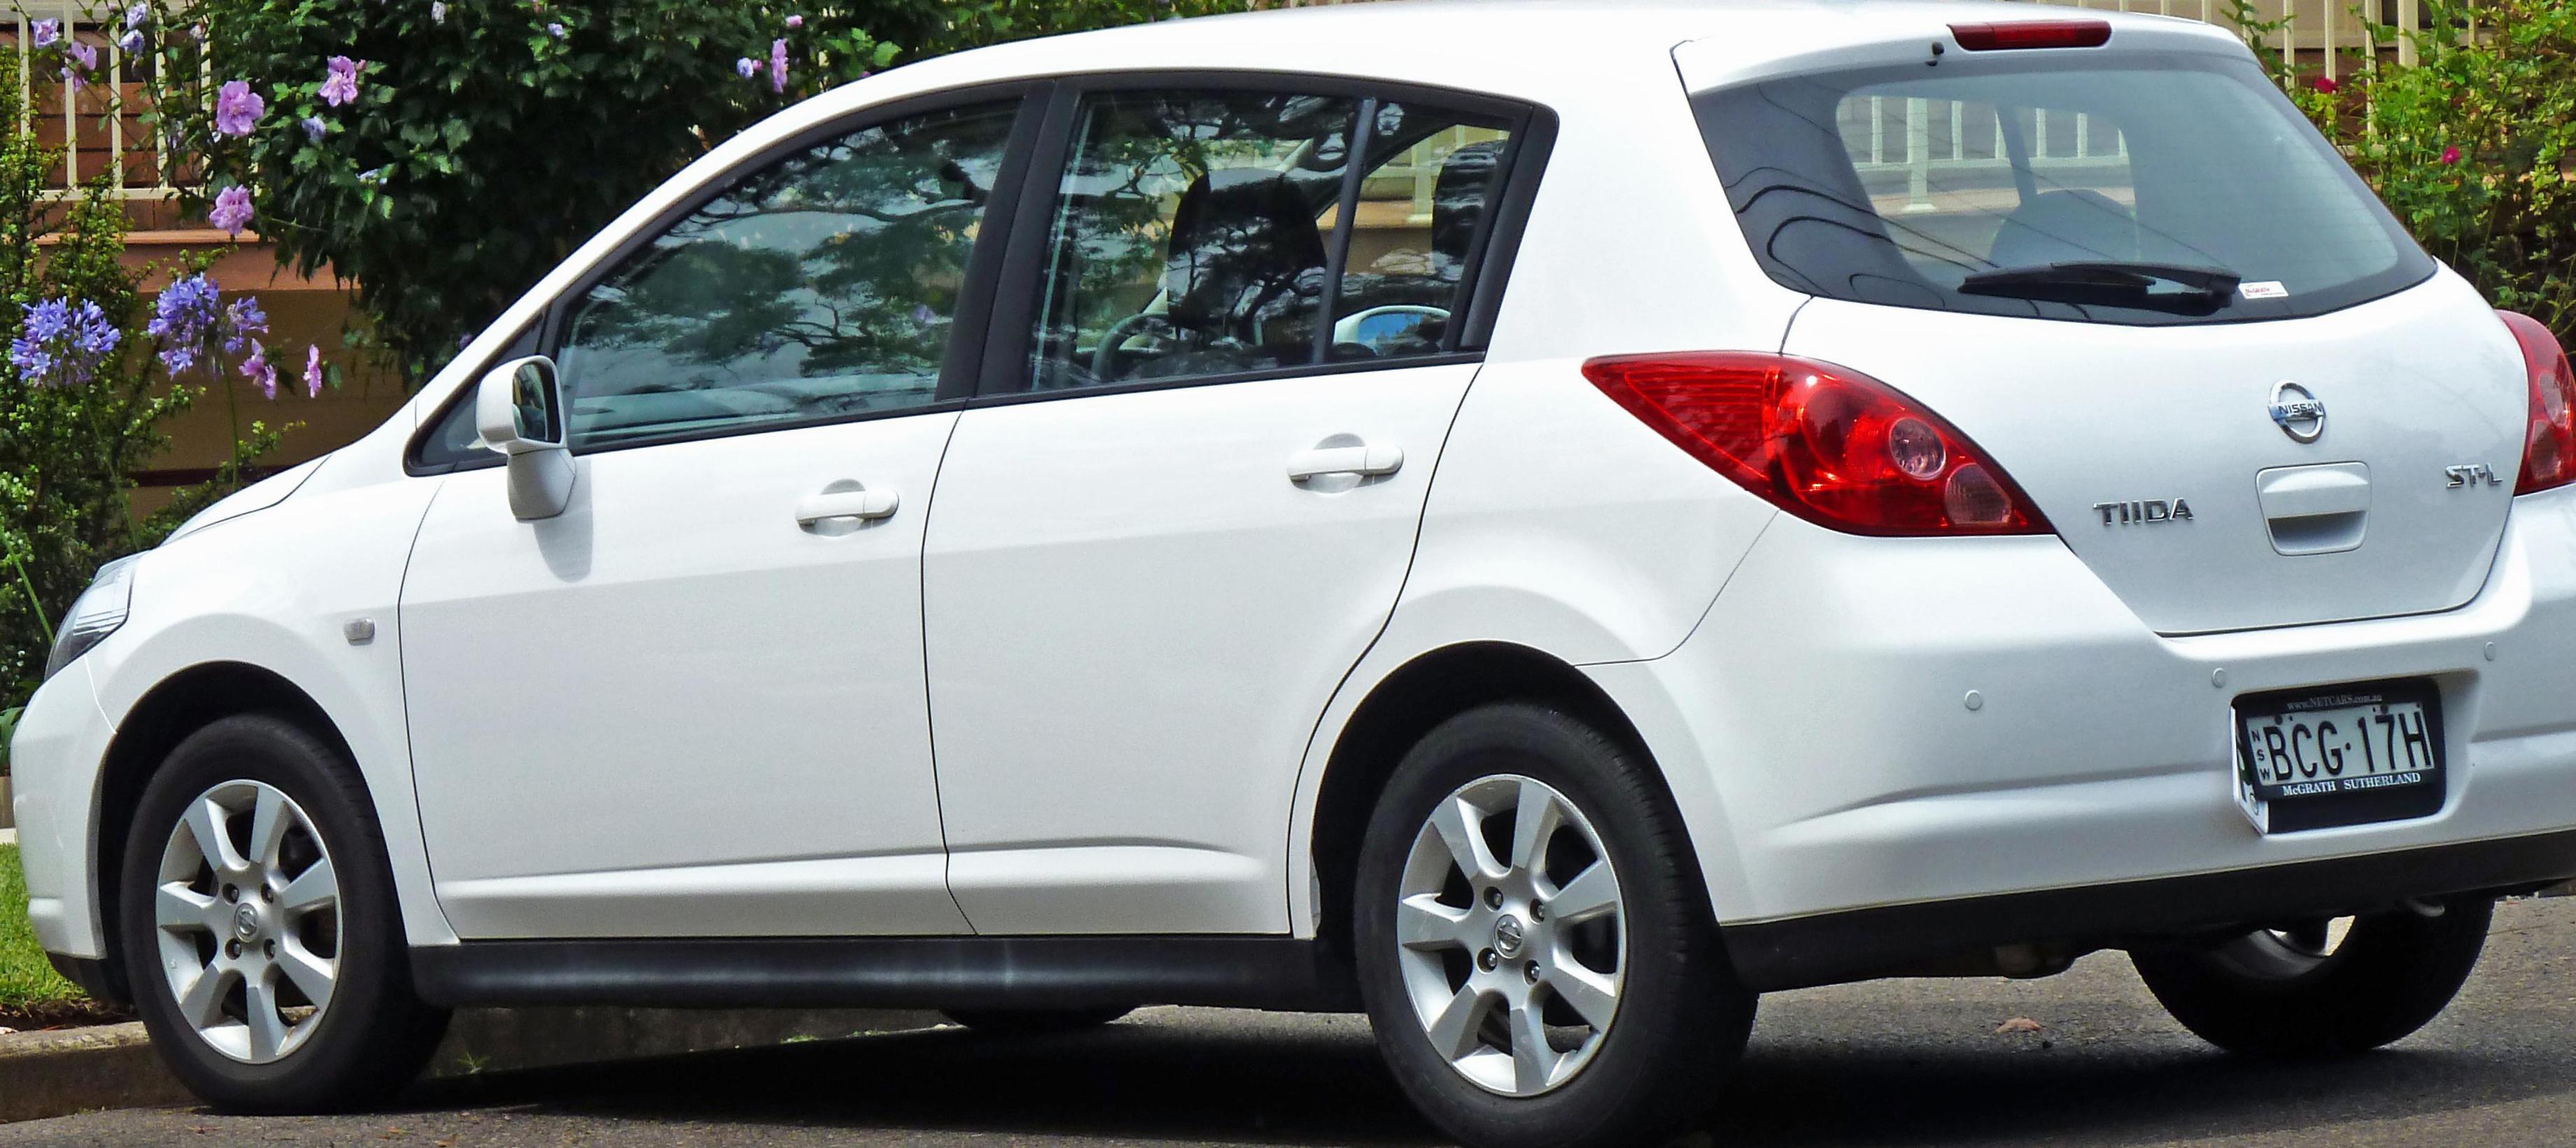 Nissan Tiida Hatchback approved van